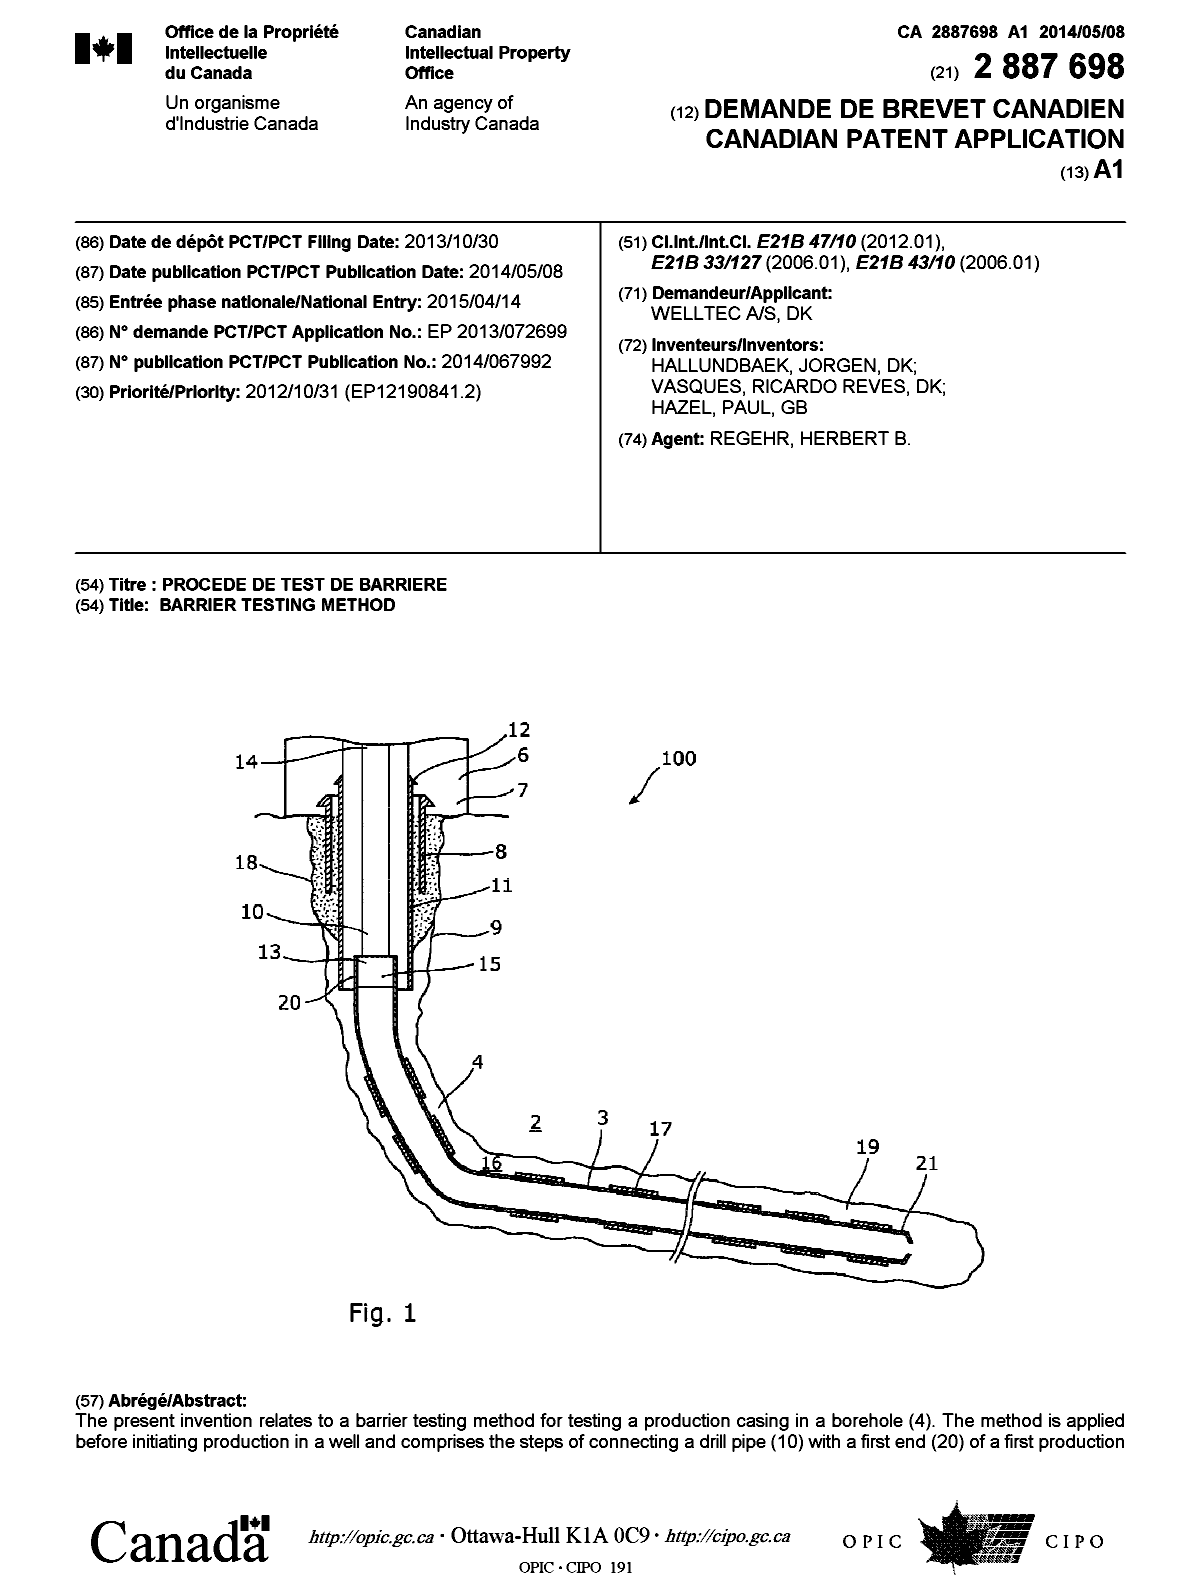 Document de brevet canadien 2887698. Page couverture 20141227. Image 1 de 2